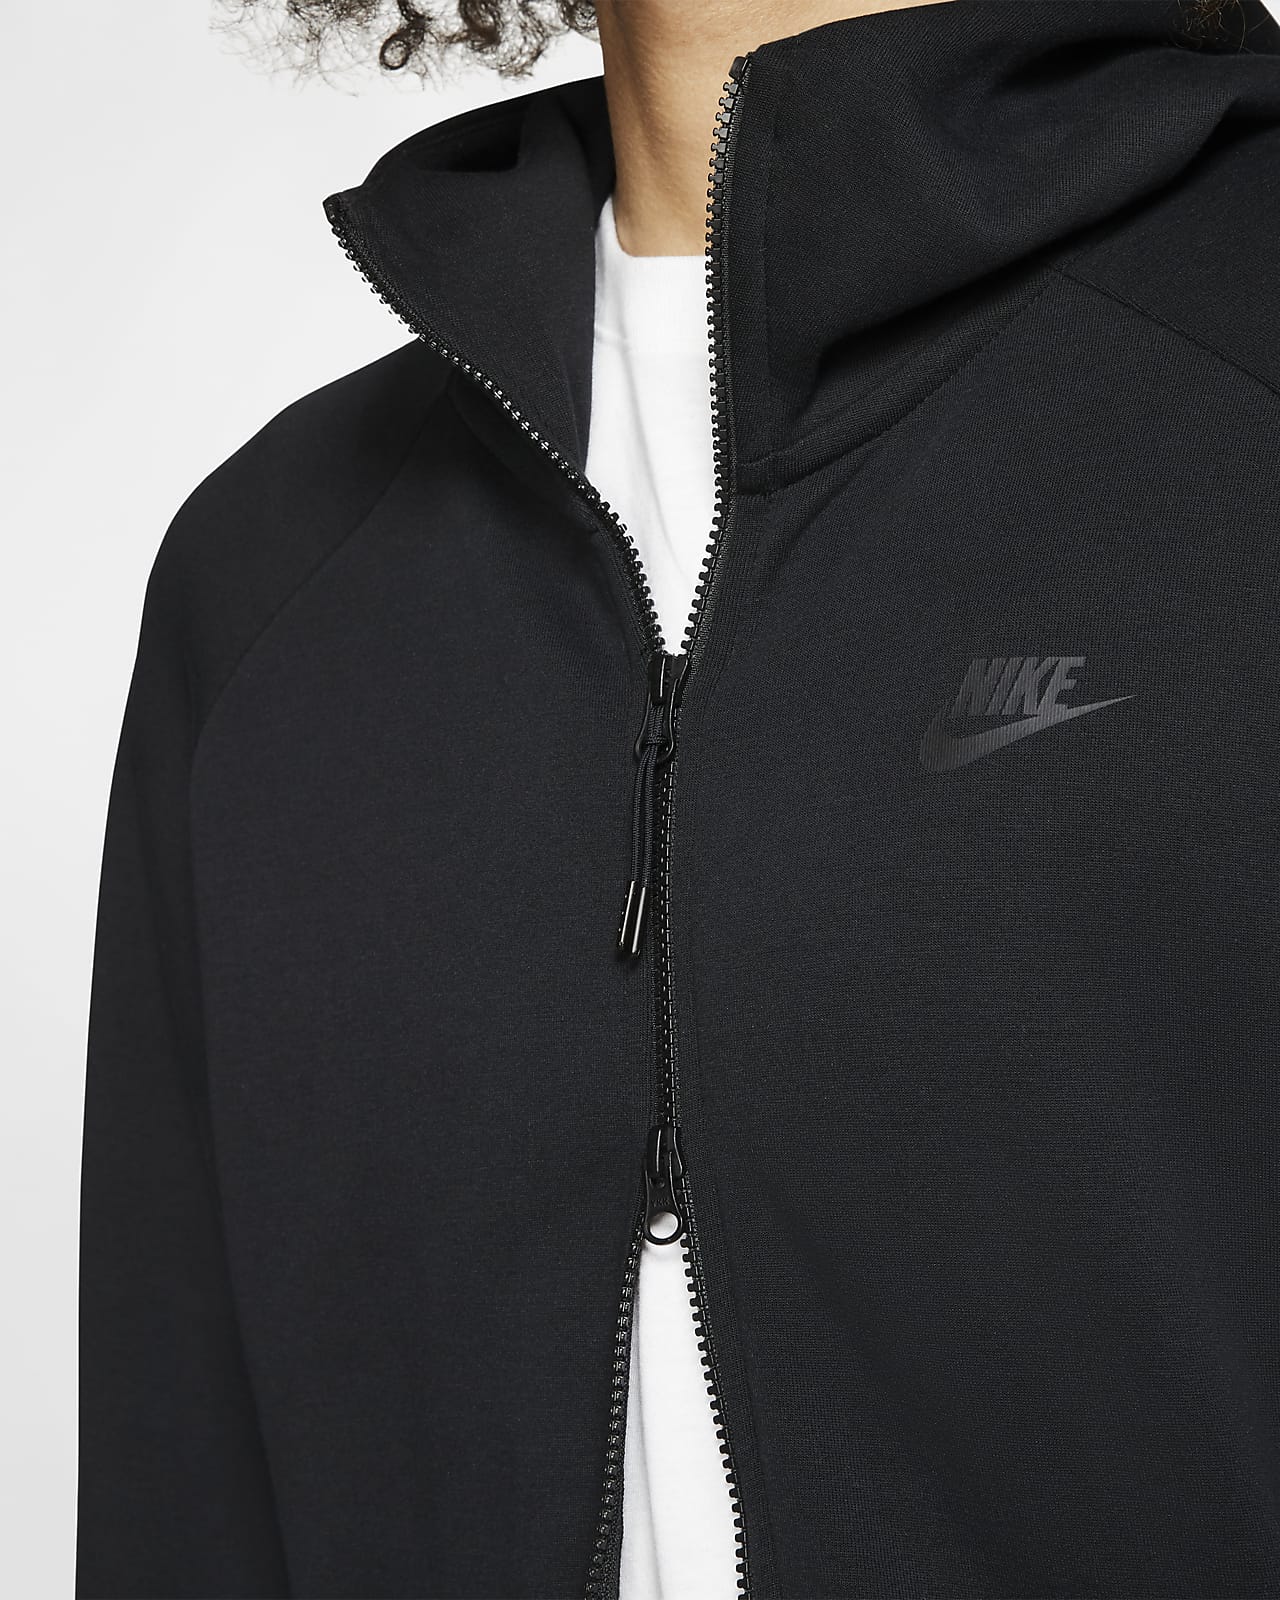 Nike Sportswear Tech Fleece Men's Full 